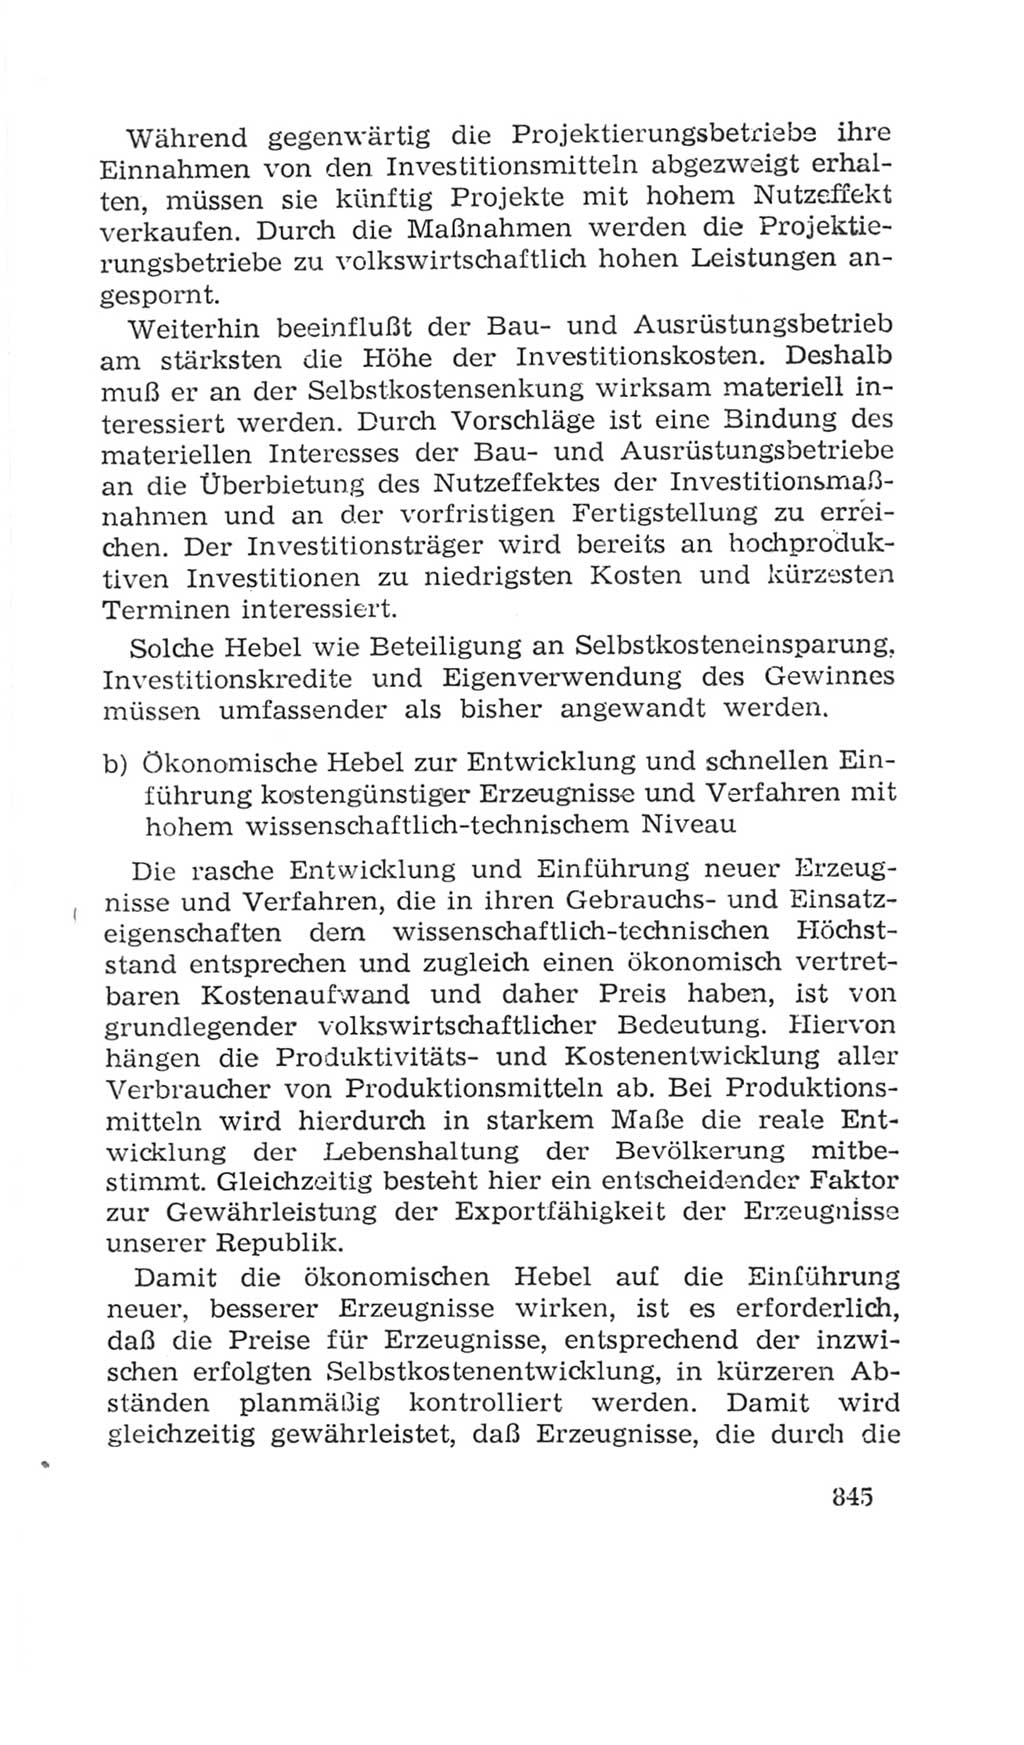 Volkskammer (VK) der Deutschen Demokratischen Republik (DDR), 4. Wahlperiode 1963-1967, Seite 845 (VK. DDR 4. WP. 1963-1967, S. 845)